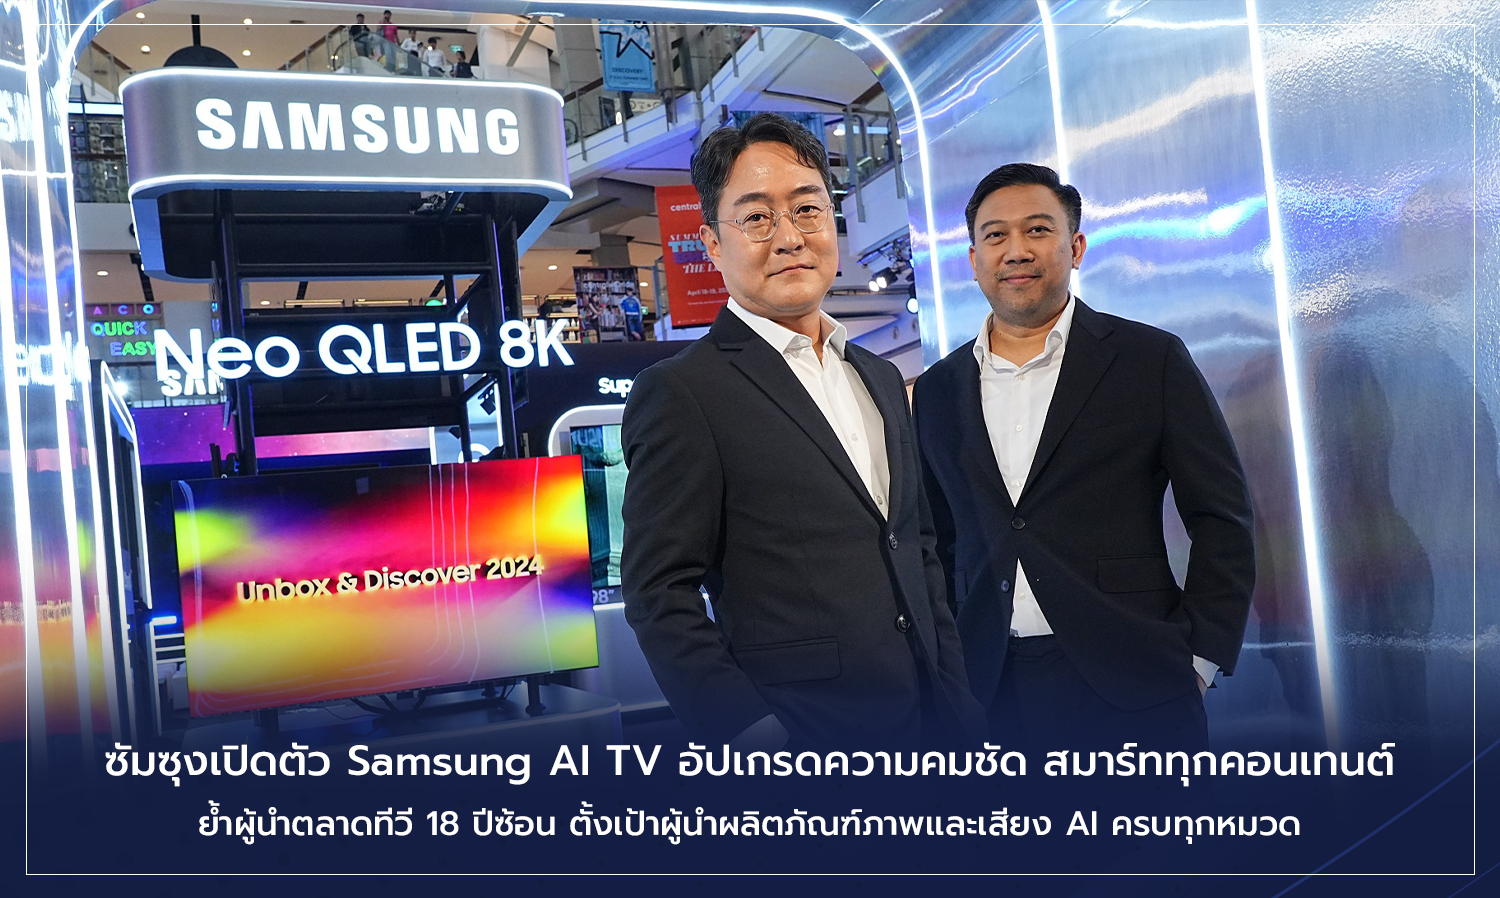 ซัมซุงเปิดตัว​ Samsung AI TV อัปเกรดความคมชัด สมาร์ททุกคอนเทนต์​  ย้ำผู้นำตลาดทีวี​ 18 ปีซ้อน​ ตั้งเป้าผู้นำผลิตภัณฑ์​ภาพและเสียง AI​ ครบทุกหมวด